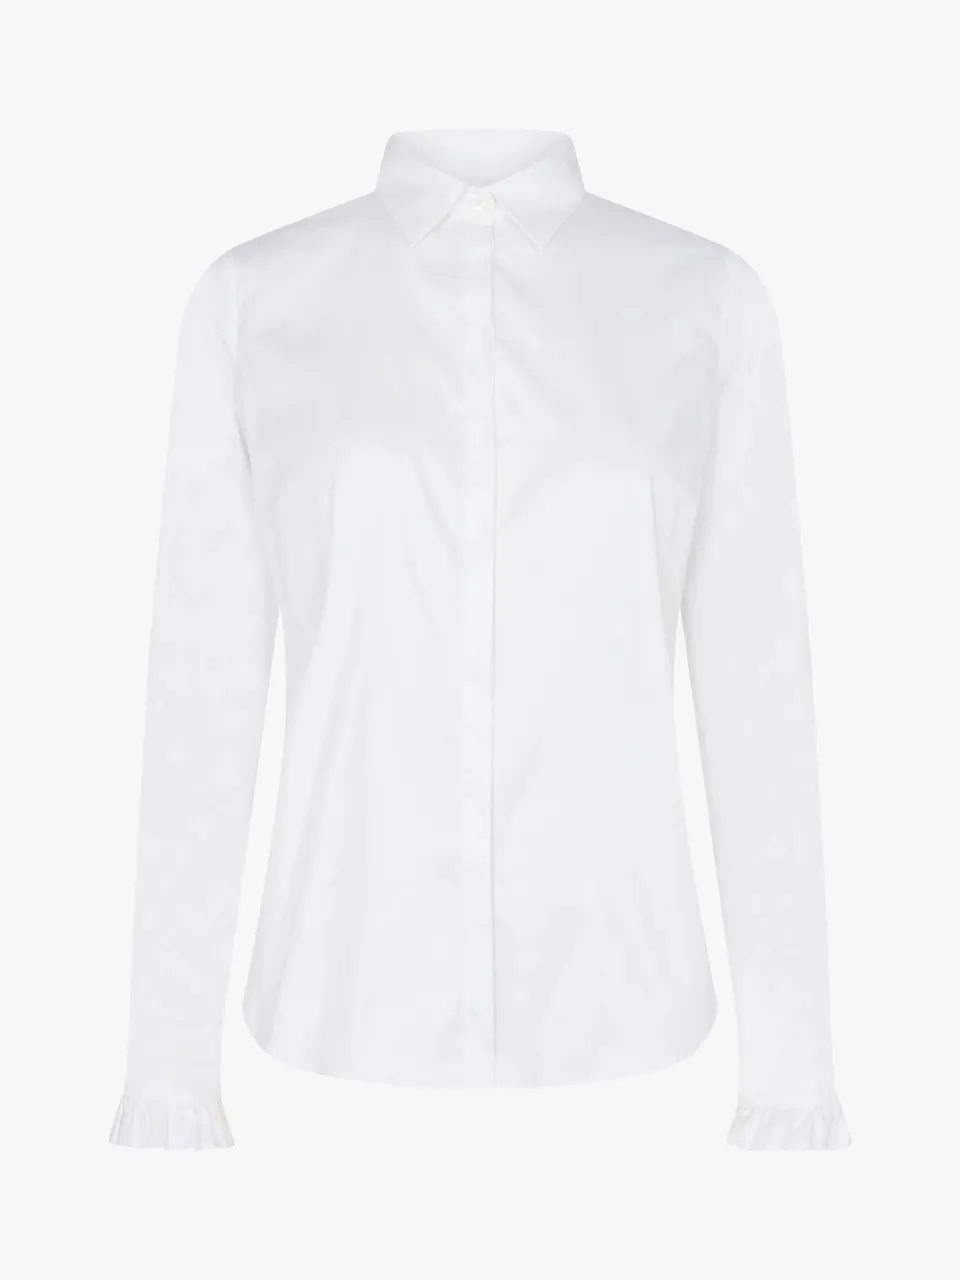 MOS MOSH Mattie Flip Shirt, White - White - Female